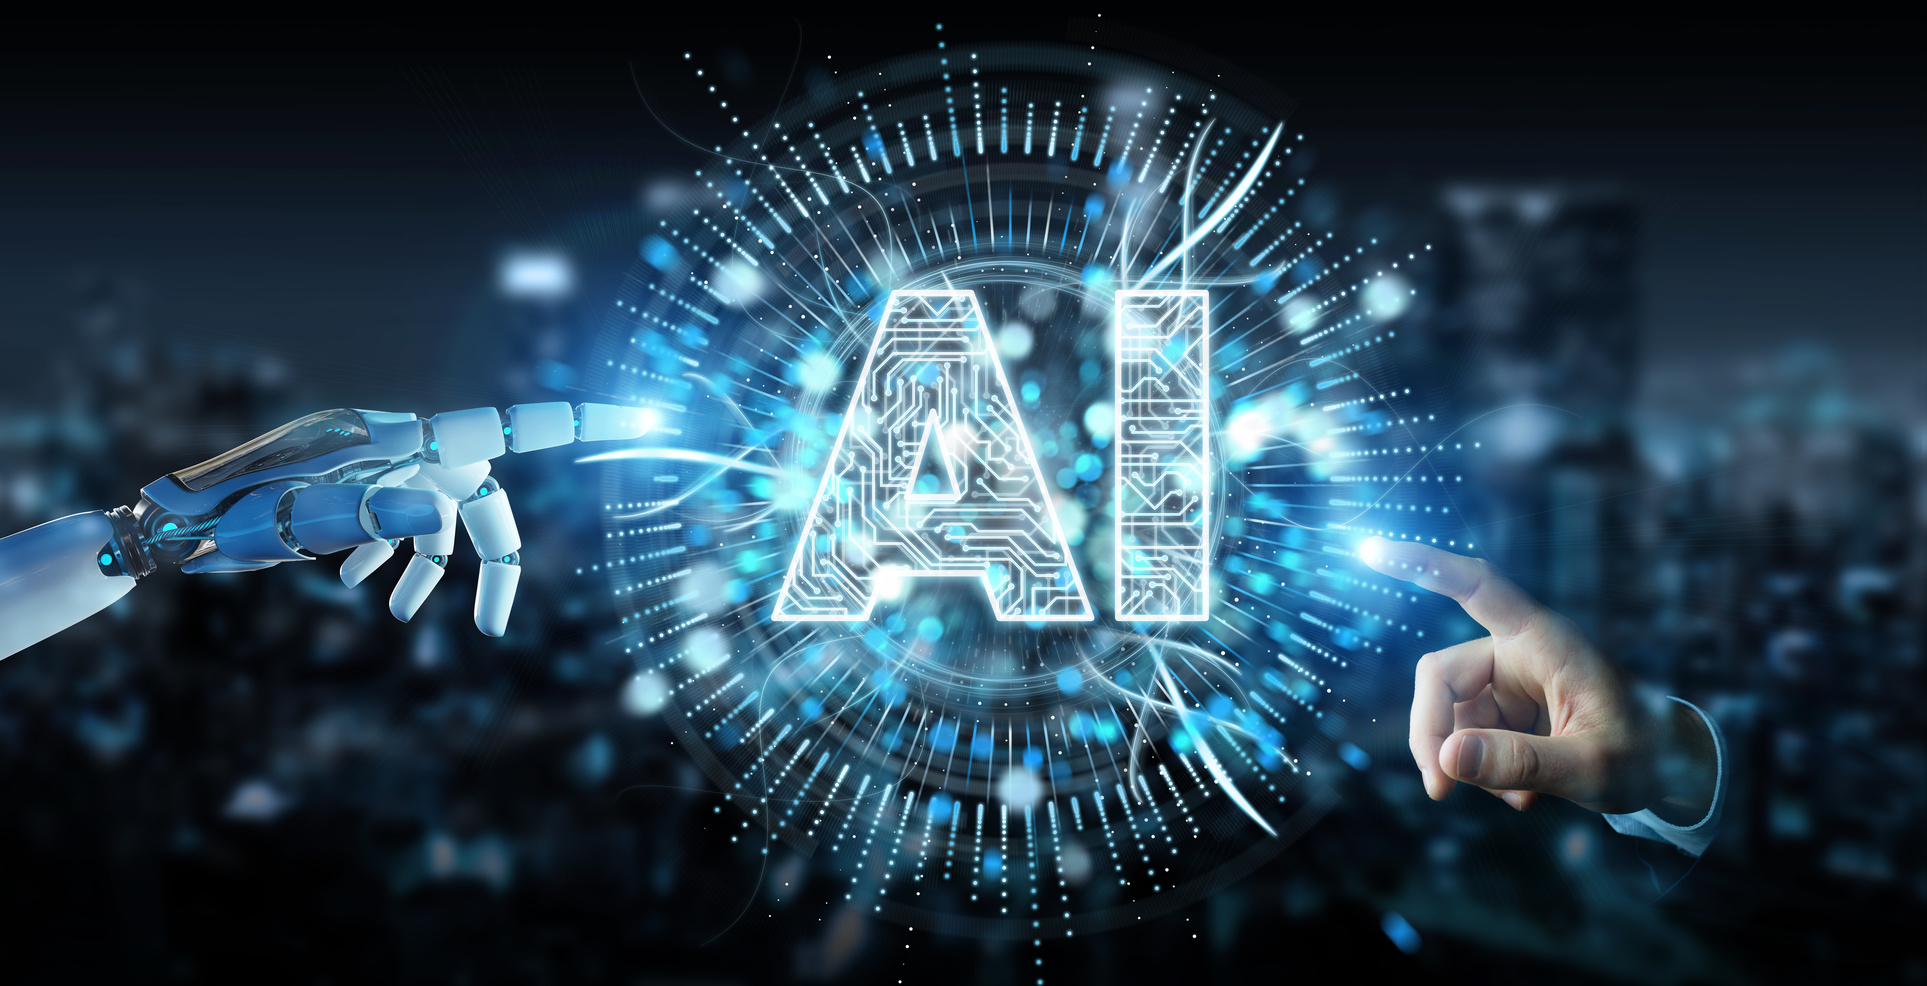 Khám phá: AI là gì? Tìm hiểu công nghệ trí tuệ nhân tạo và ứng dụng trong cuộc sống 2